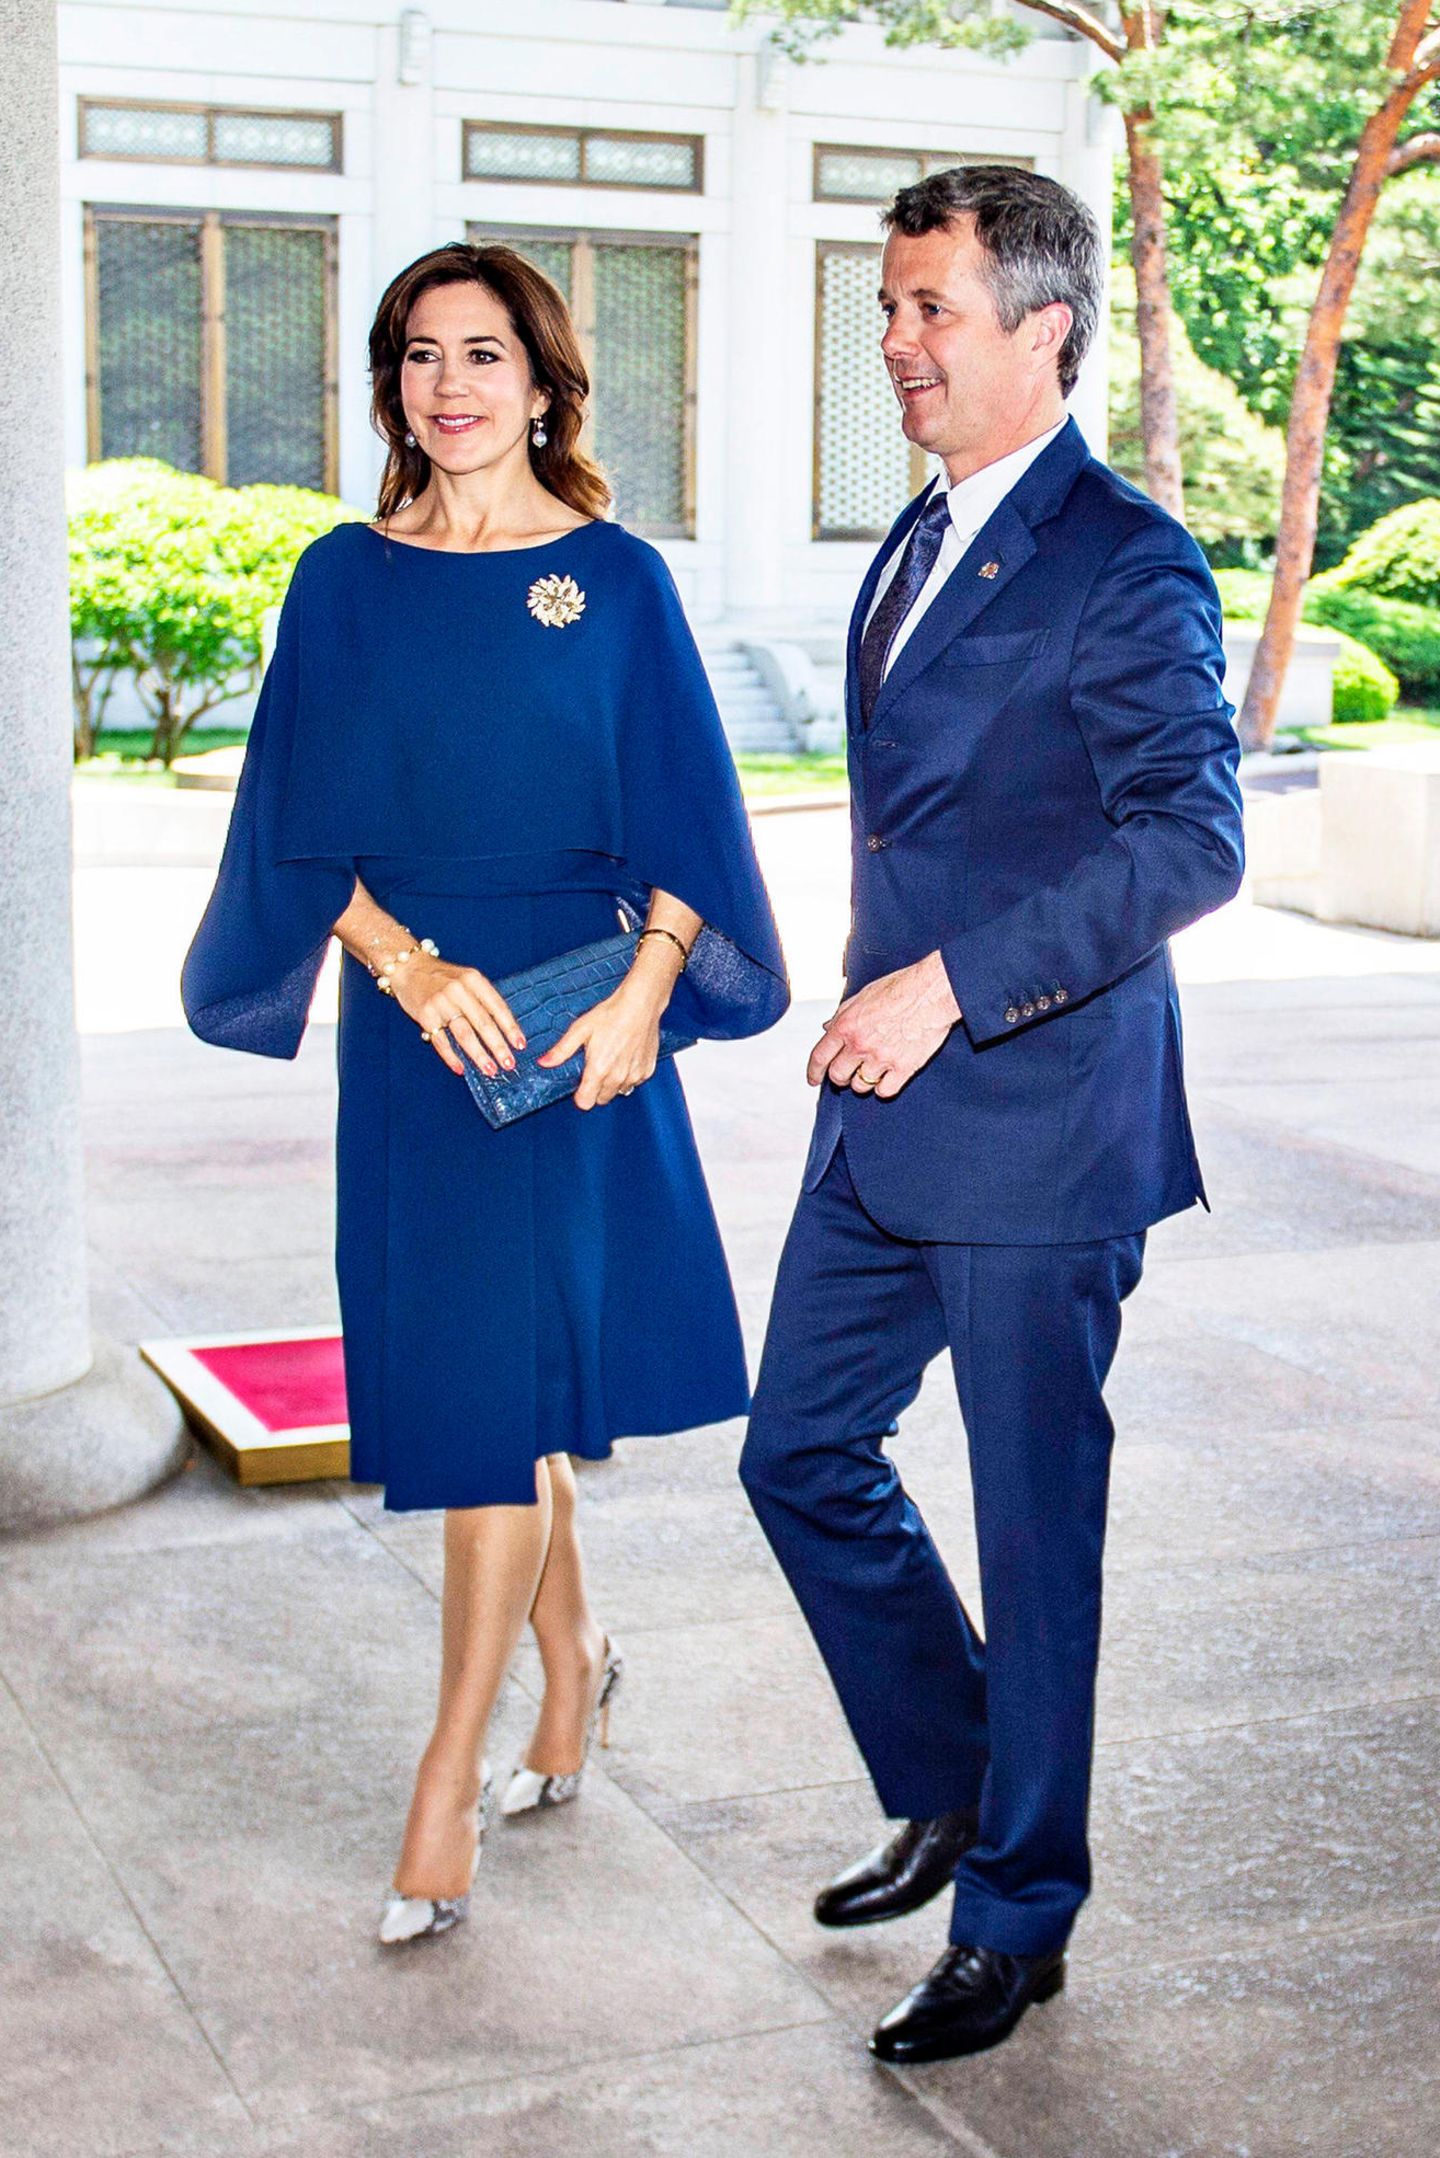 Im Rahmen ihrer Wirtschaftsreise in Südkorea bezaubert das dänische Kronprinzen-Paar in einem royalblauen Partnerlook. Prinzessin Mary in einem luftigen Sommerkleid mit Statement-Ärmeln und Prinz Frederik in einem farblich passenden Anzug. 